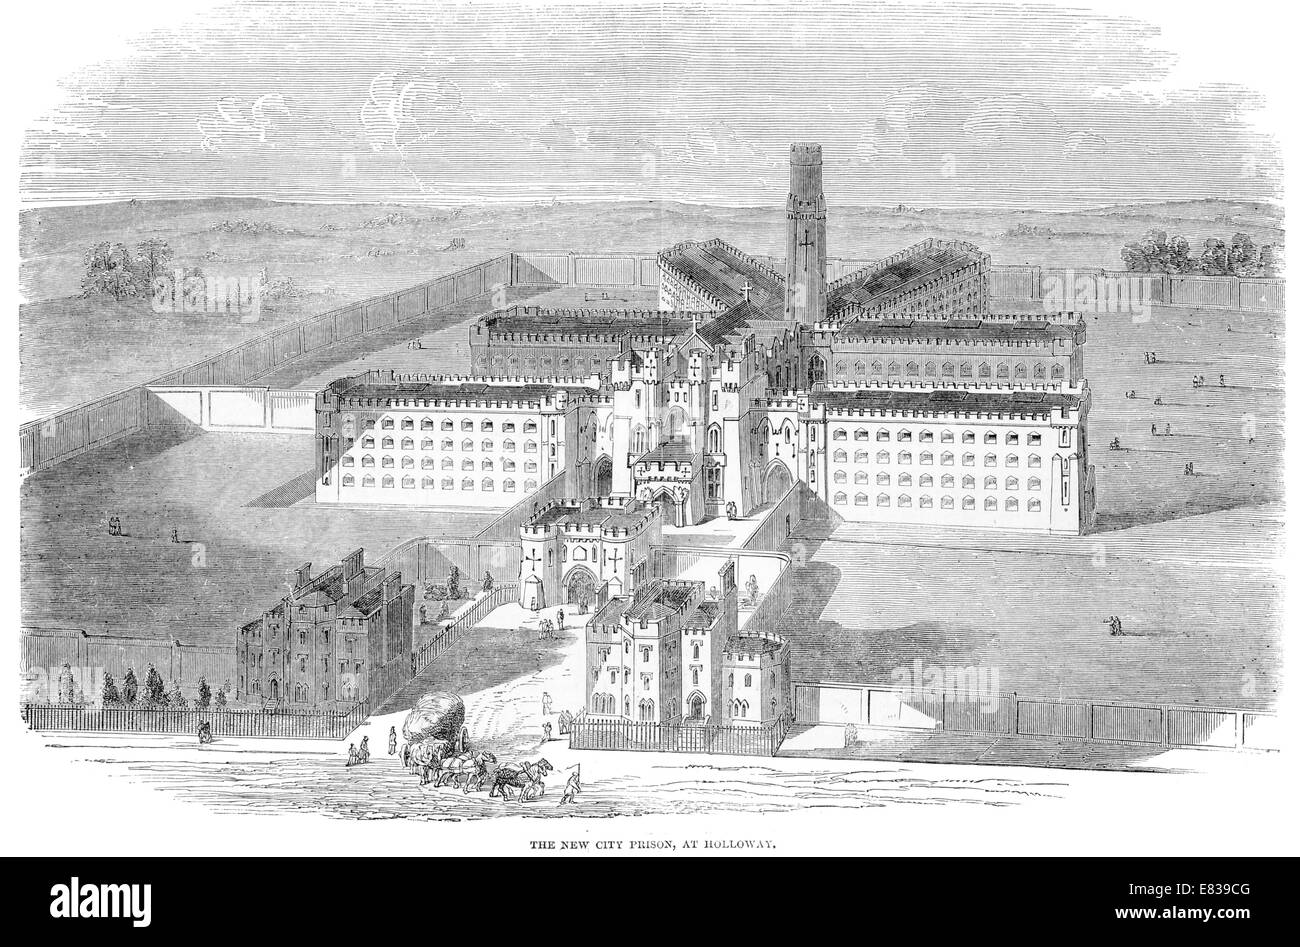 Nueva ciudad prisión Holloway de Londres hacia 1885 Foto de stock